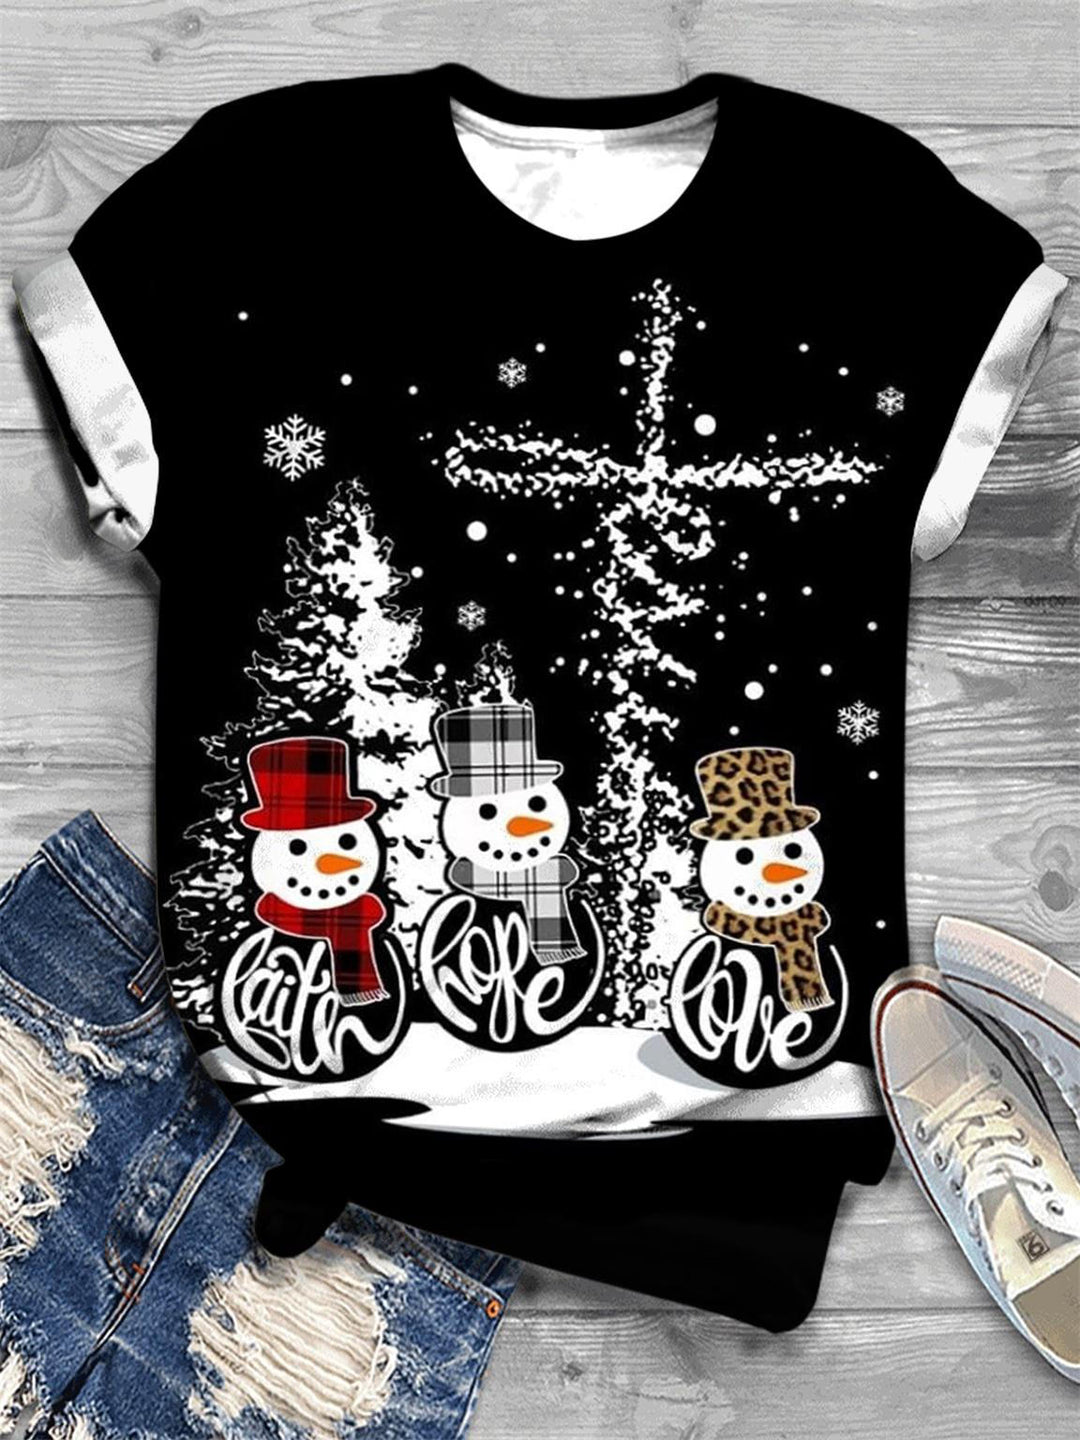 Snowman Faith Hope Love Print T-shirt